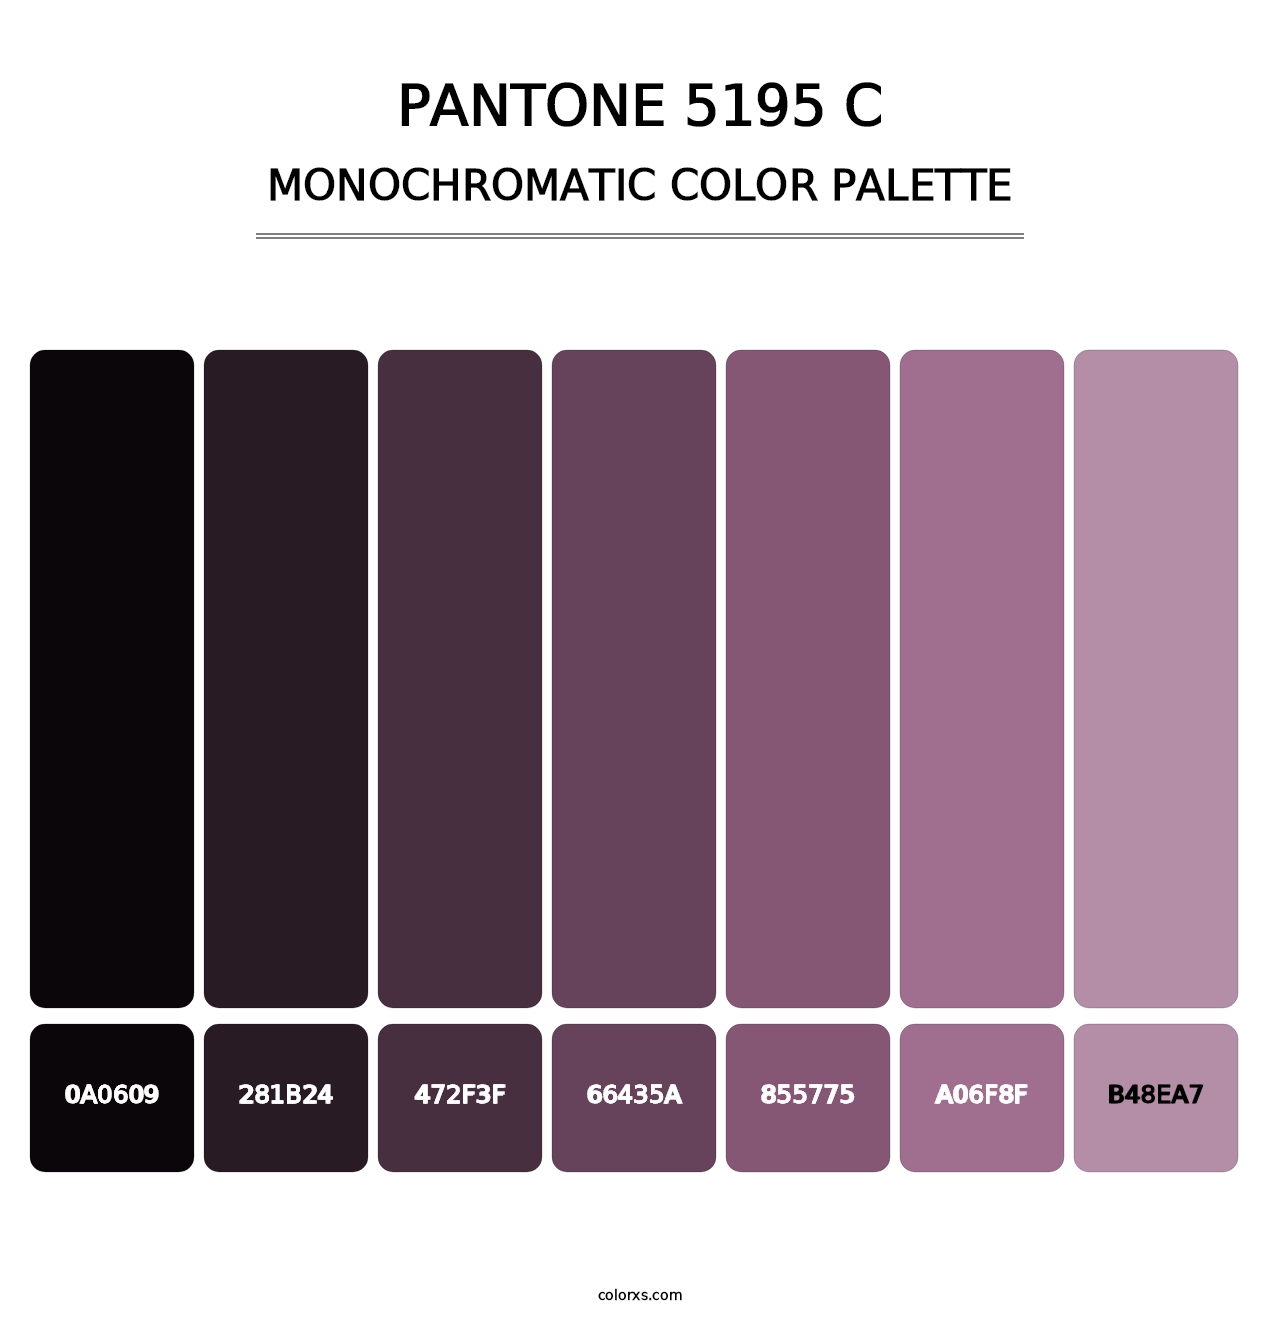 PANTONE 5195 C - Monochromatic Color Palette